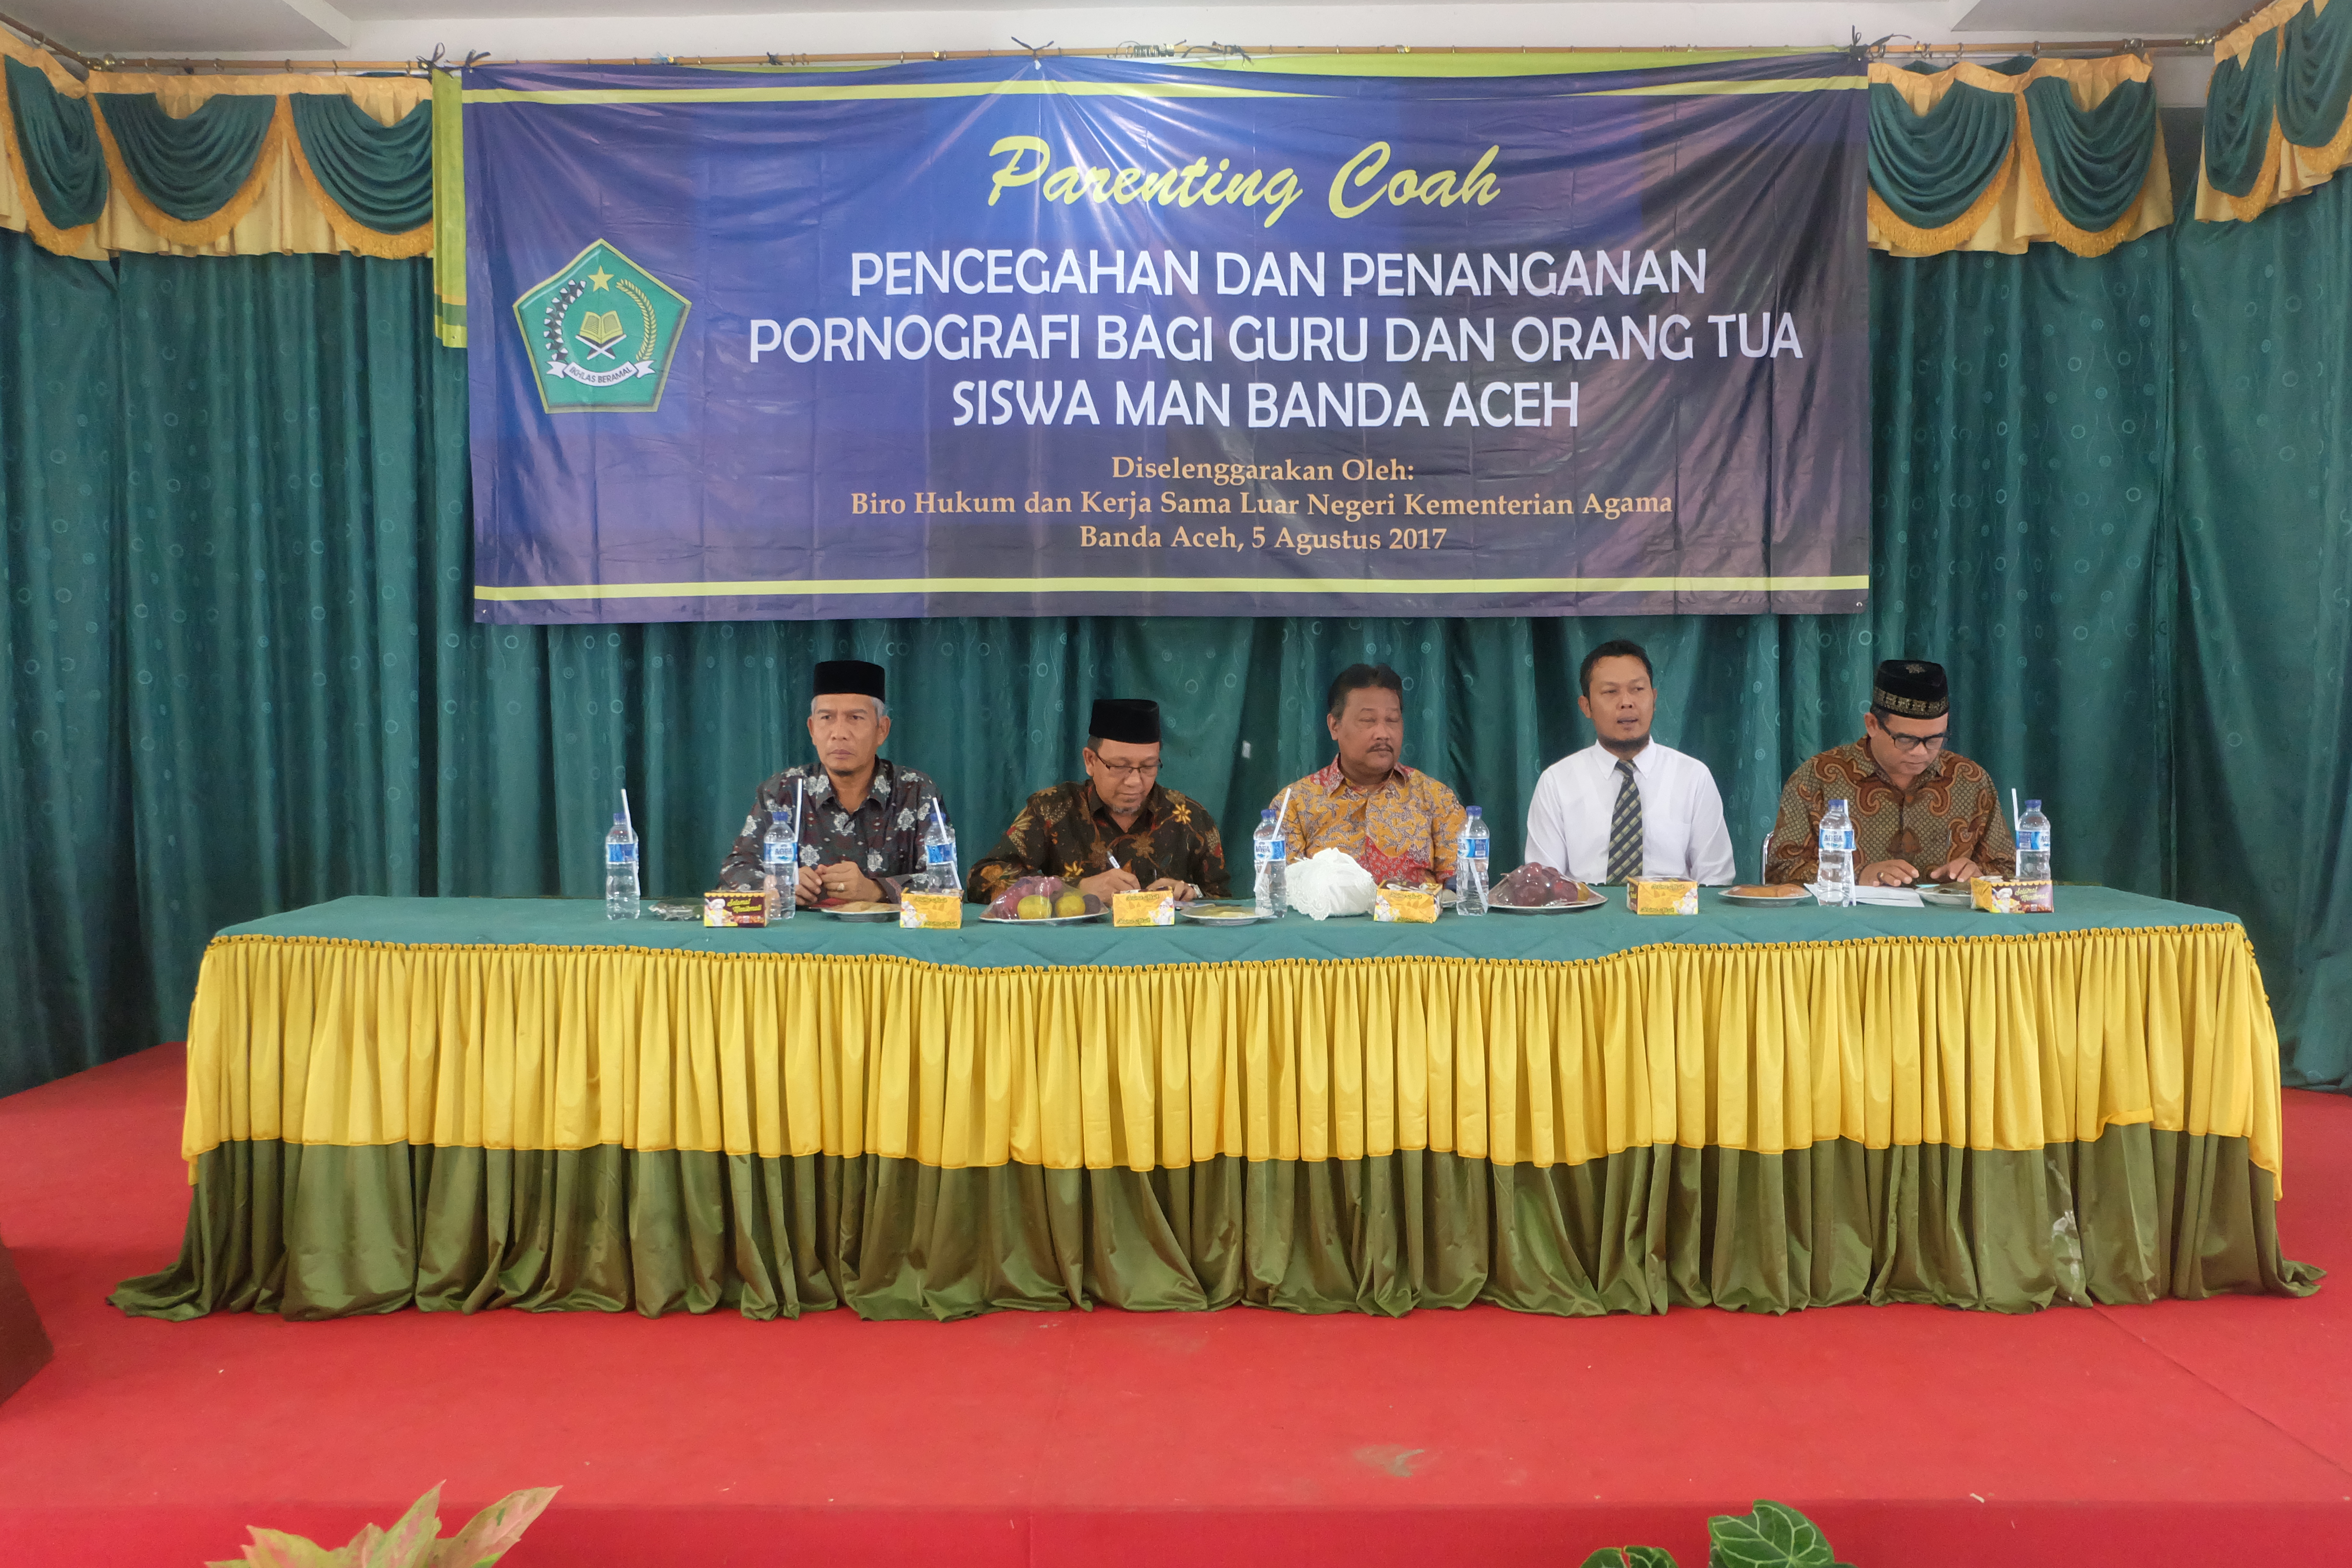 Parenting Coach: Pencegahan dan Penanganan Pornografi di lingkungan Madrasah Aliyah Negeri Kota Banda Aceh